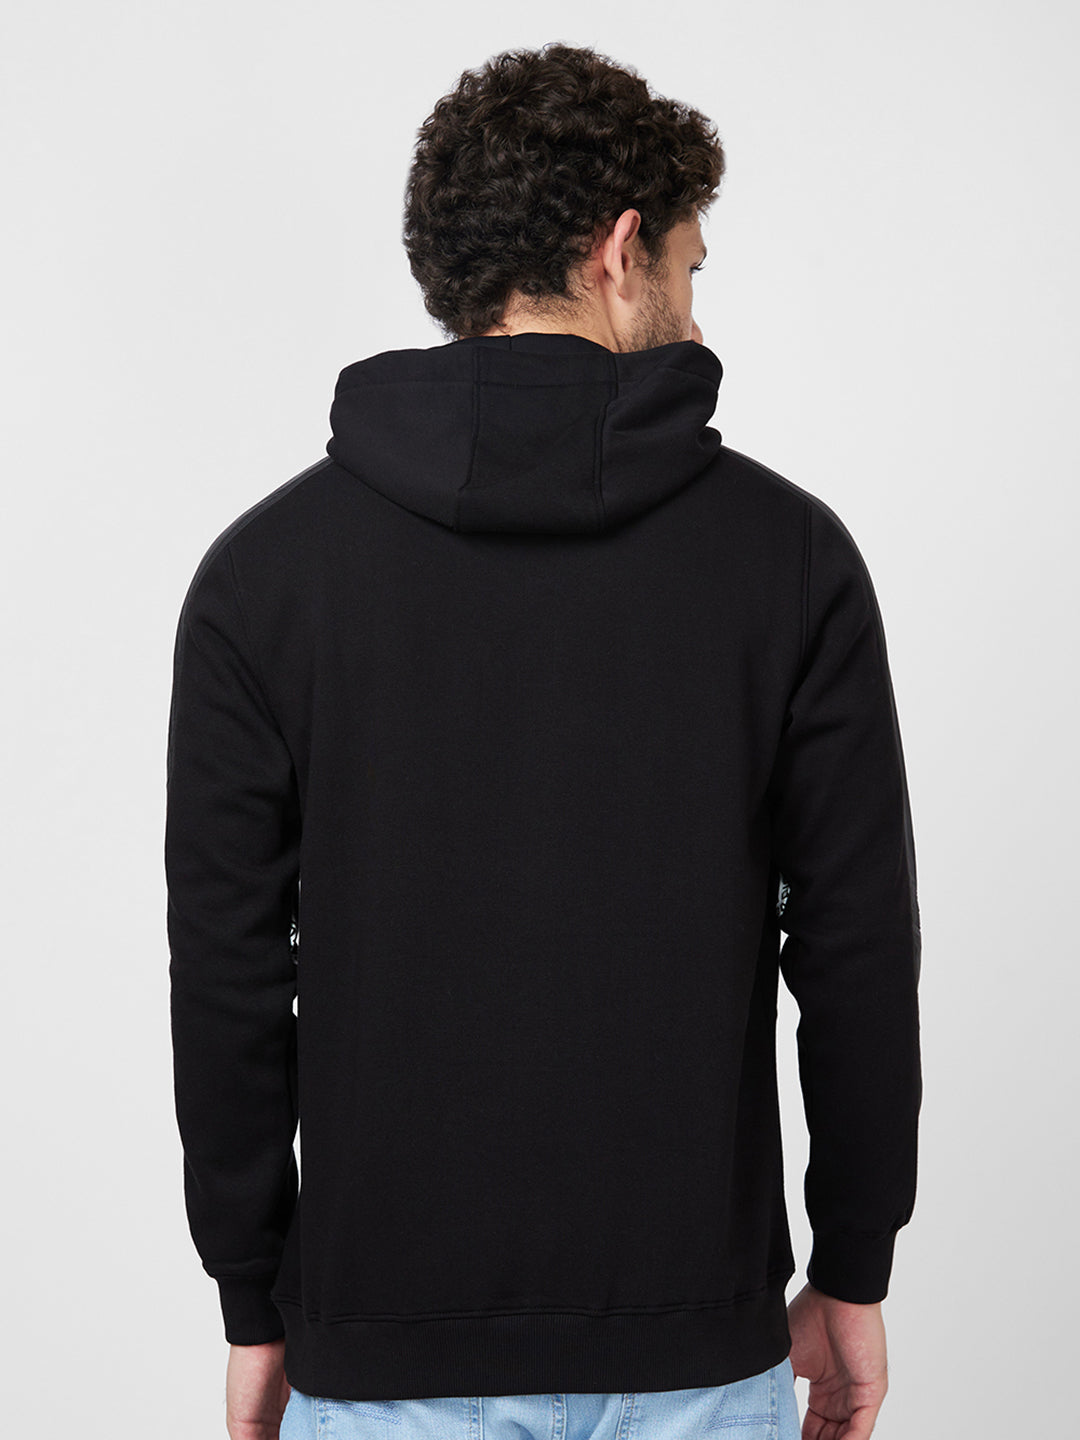 Spykar Hooded Full Sleeve Black Sweatshirt For Men